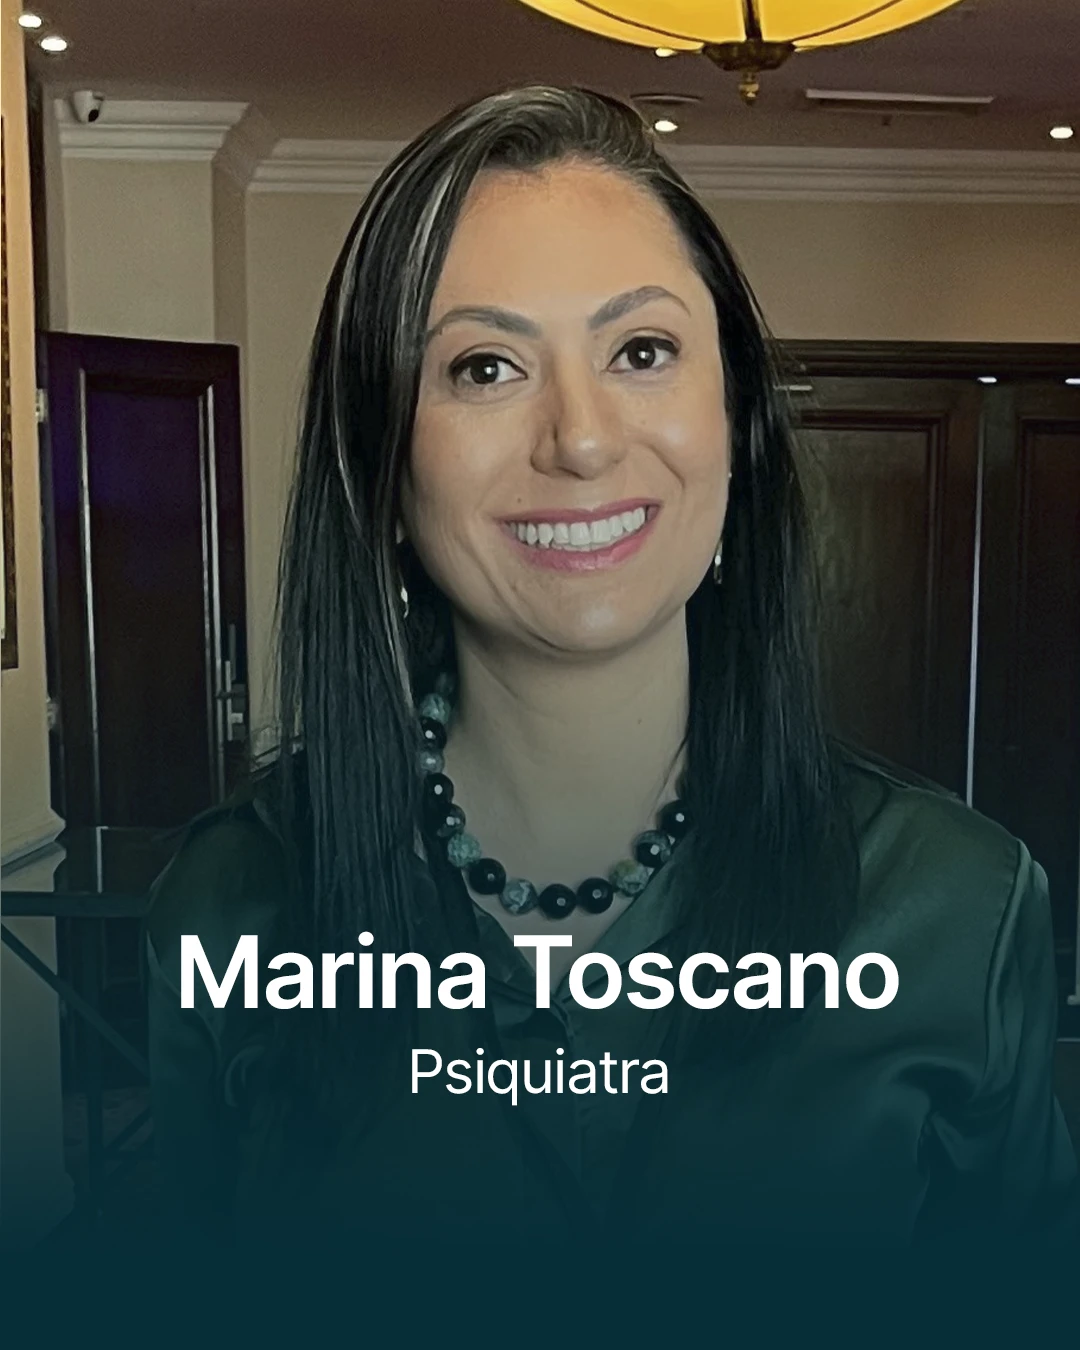 Marina Toscano